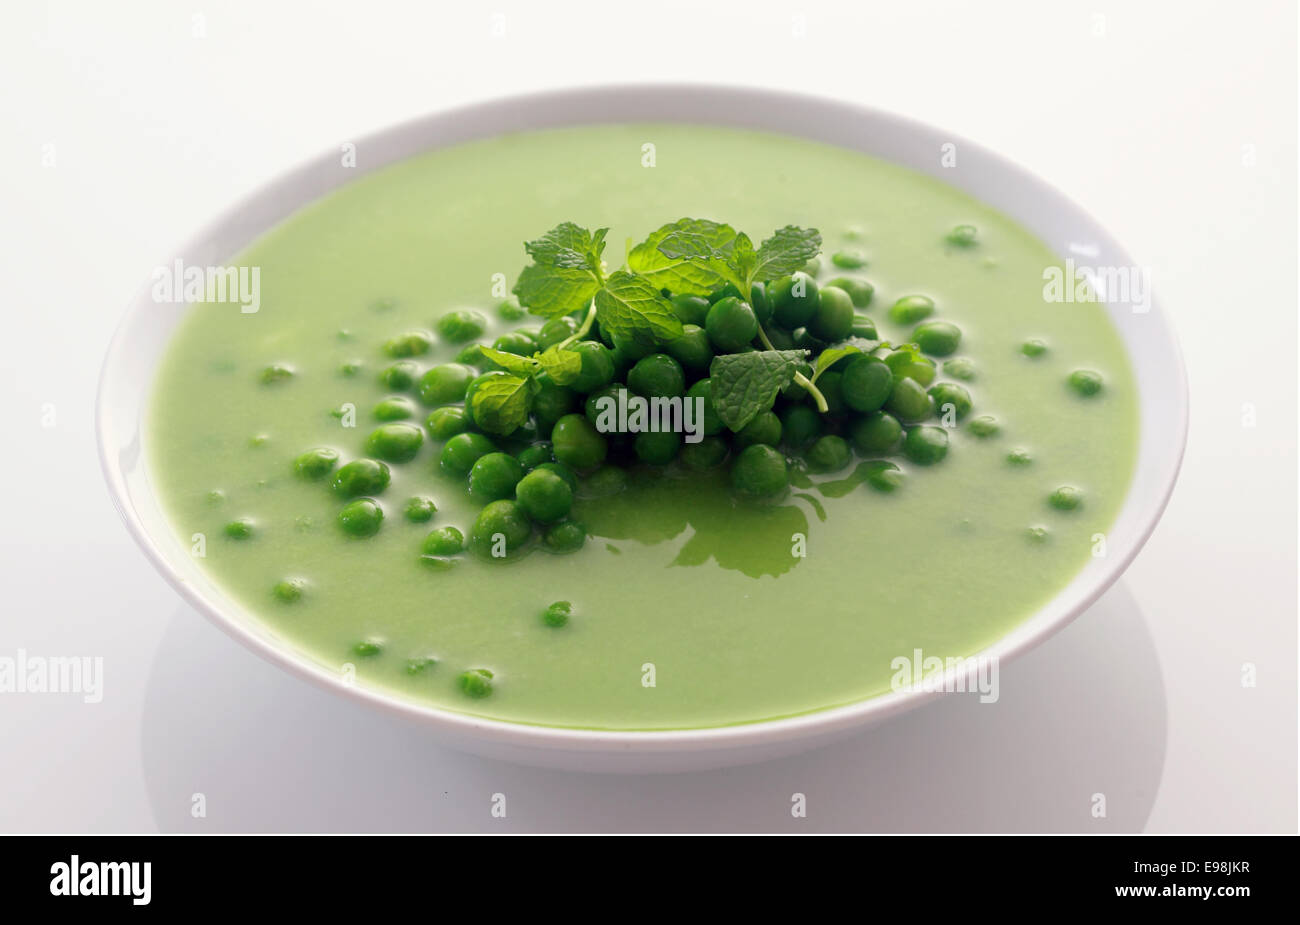 Schließen Sie appetitlich gesunde grüne Erbsen Suppe auf weiße Schüssel isoliert auf weißem Hintergrund. Stockfoto